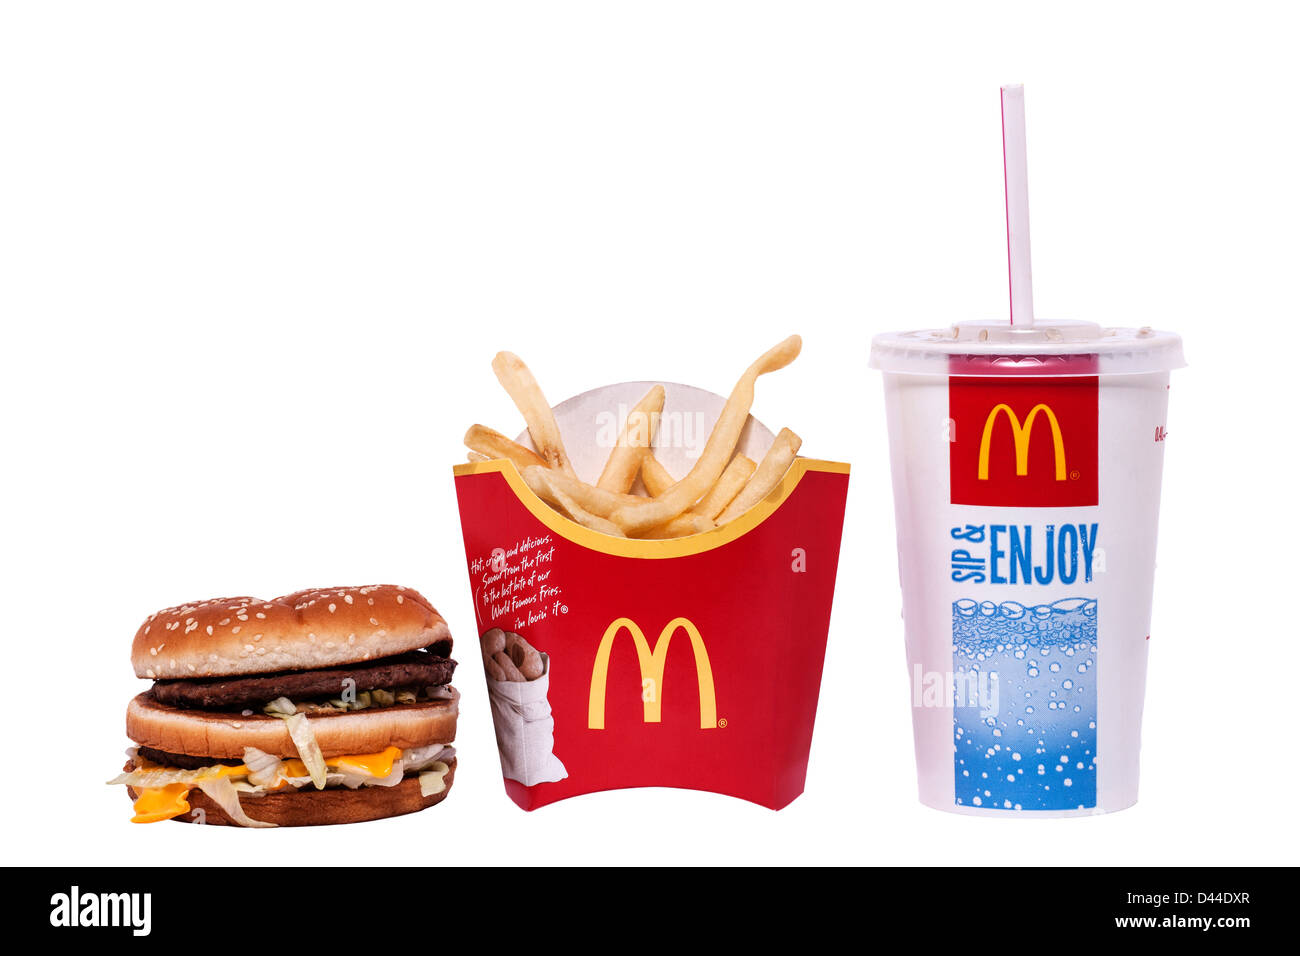 Ein Big Mac von Mcdonalds Essen mit Burger, Pommes und Getränk auf weißem Hintergrund Stockfoto